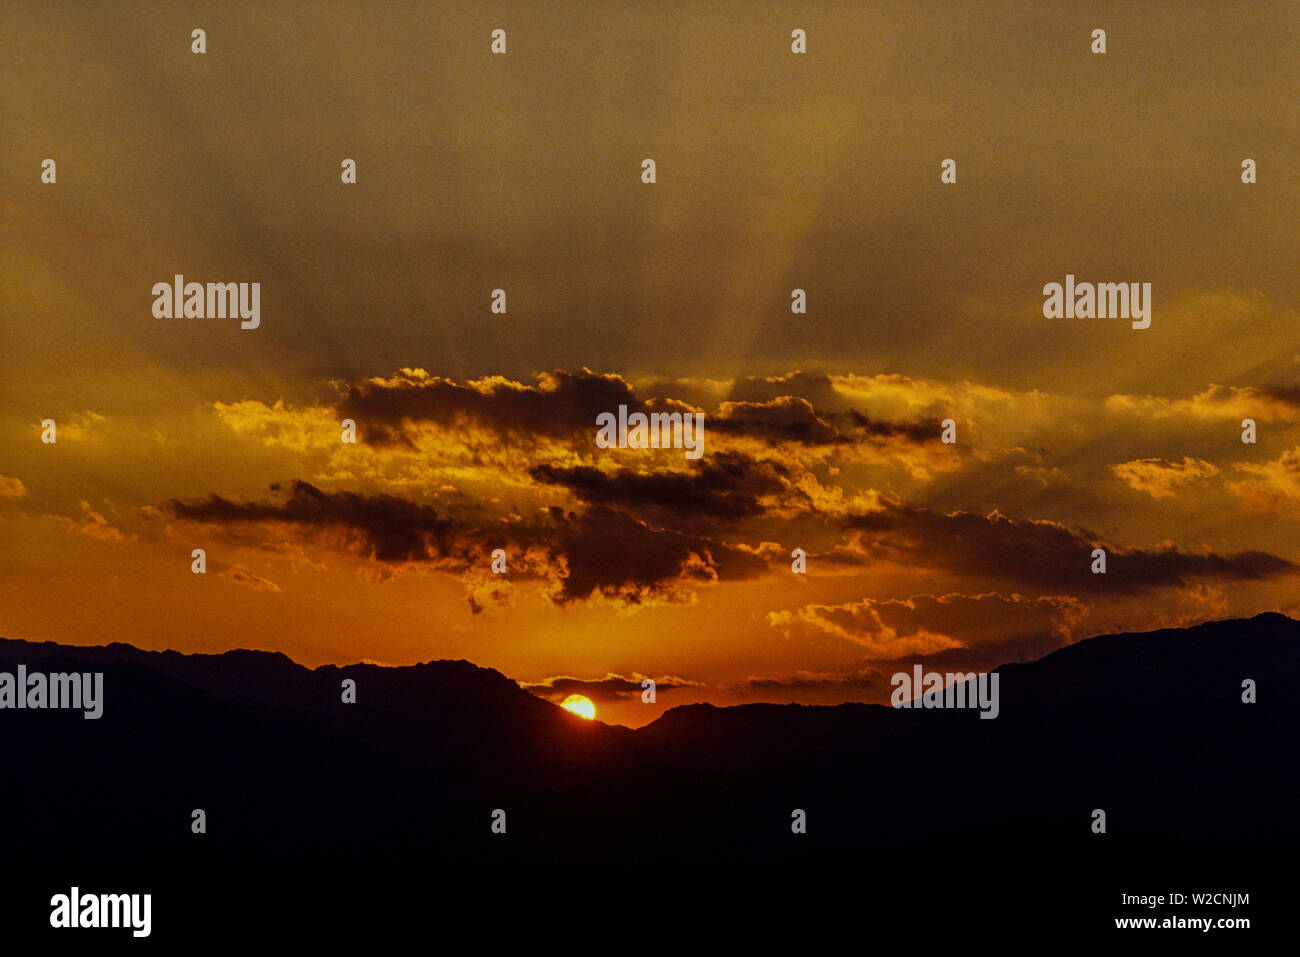 Korsika, August 1990. Sonnenuntergang über den Bergen. Foto: © Simon Grosset. Archiv: Bild von einem ursprünglichen Transparenz digitalisiert. Stockfoto